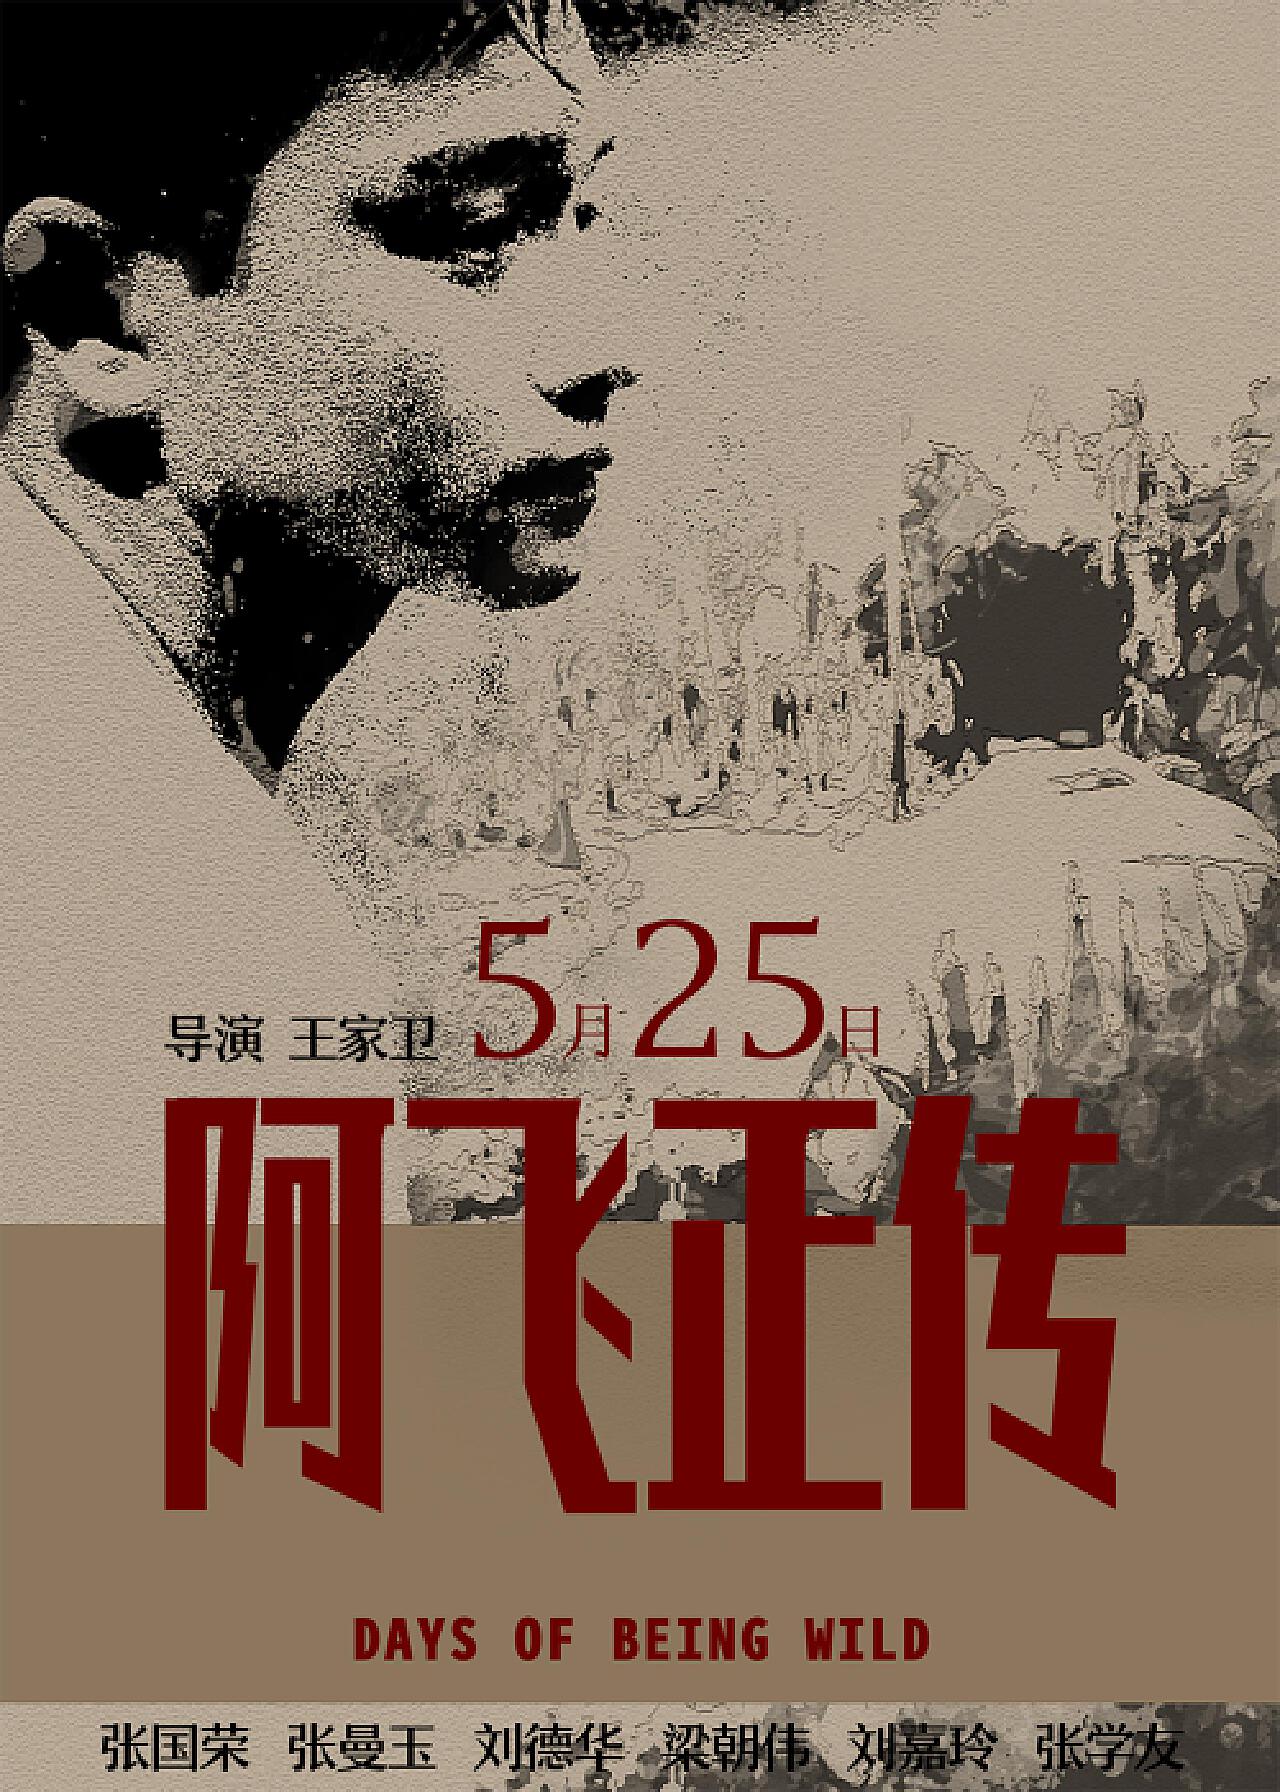 1990年香港经典之作《阿飞正传》电影海报 - 电影海报